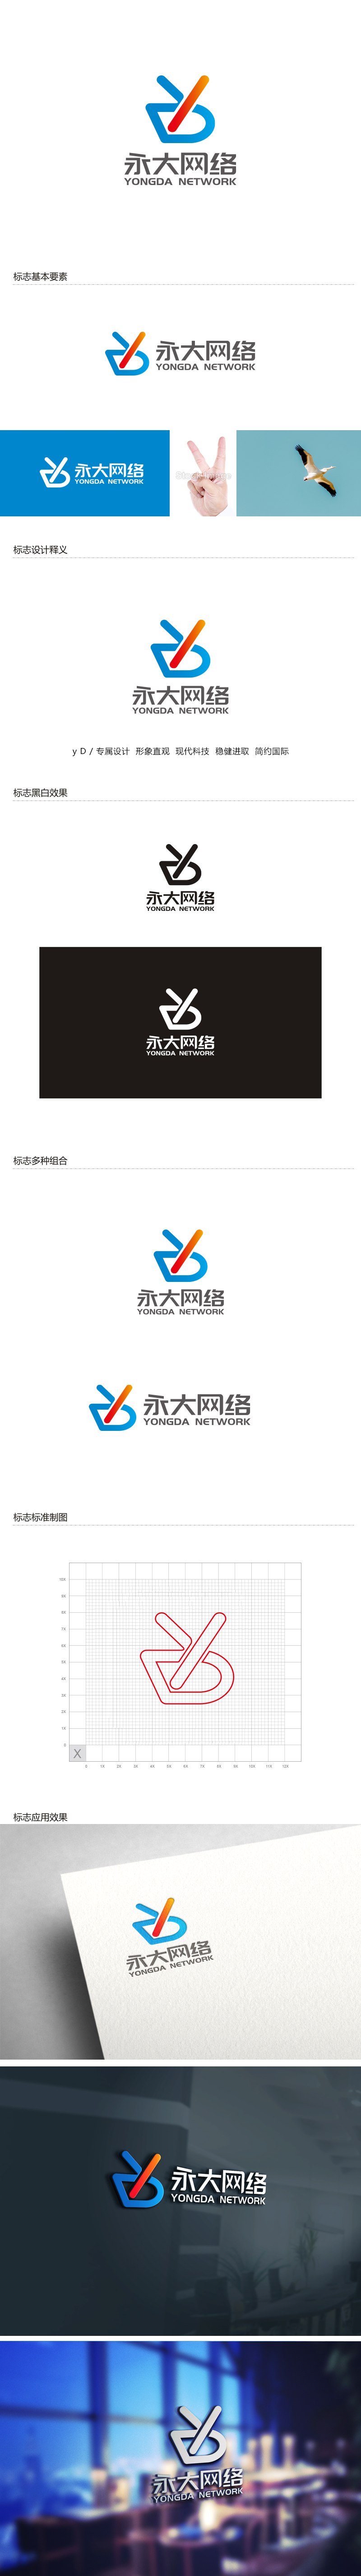 杨勇的永大网络logo设计